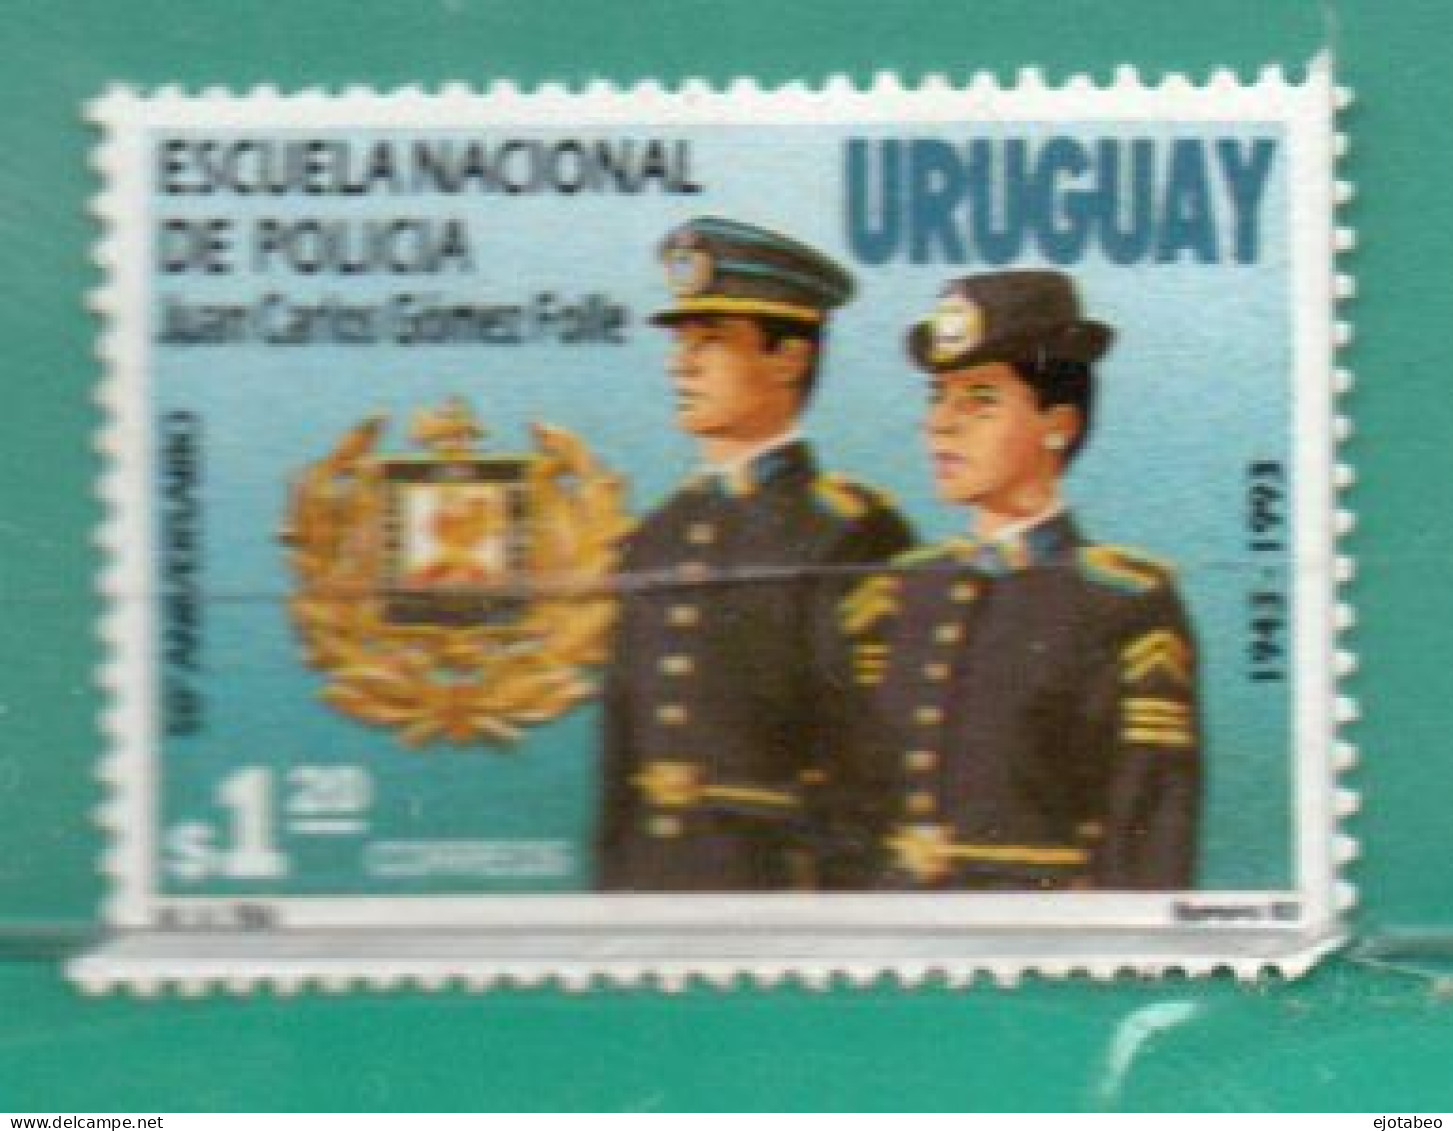 812b URUGUAY 1993 YT 1440 Nuevo Sin Goma-50a.Escuela Nacional De PolicíaTT:Sombreros,Escudos,Uniformes,Gallos - Uruguay